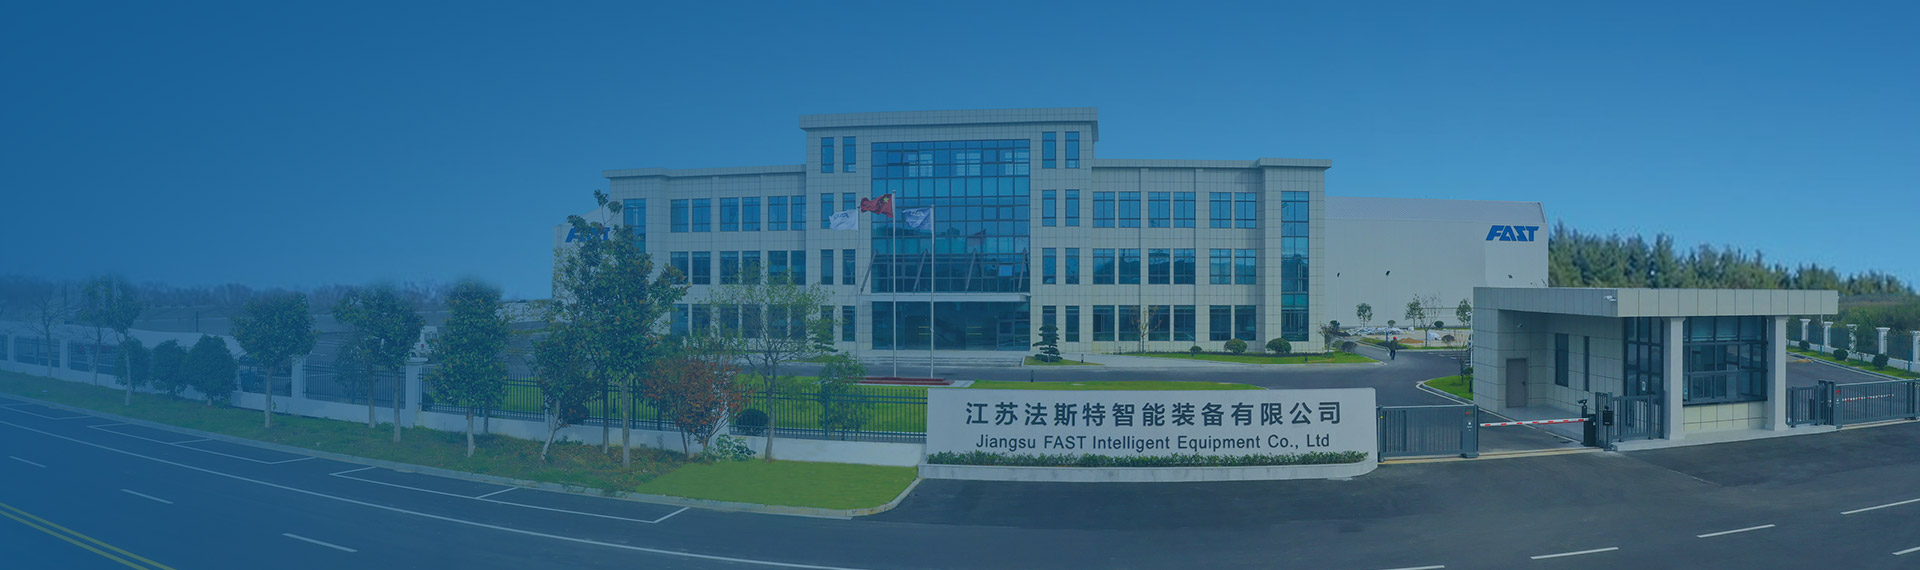 Jiangsu Fast Intelligent Equipment Co., Ltd.